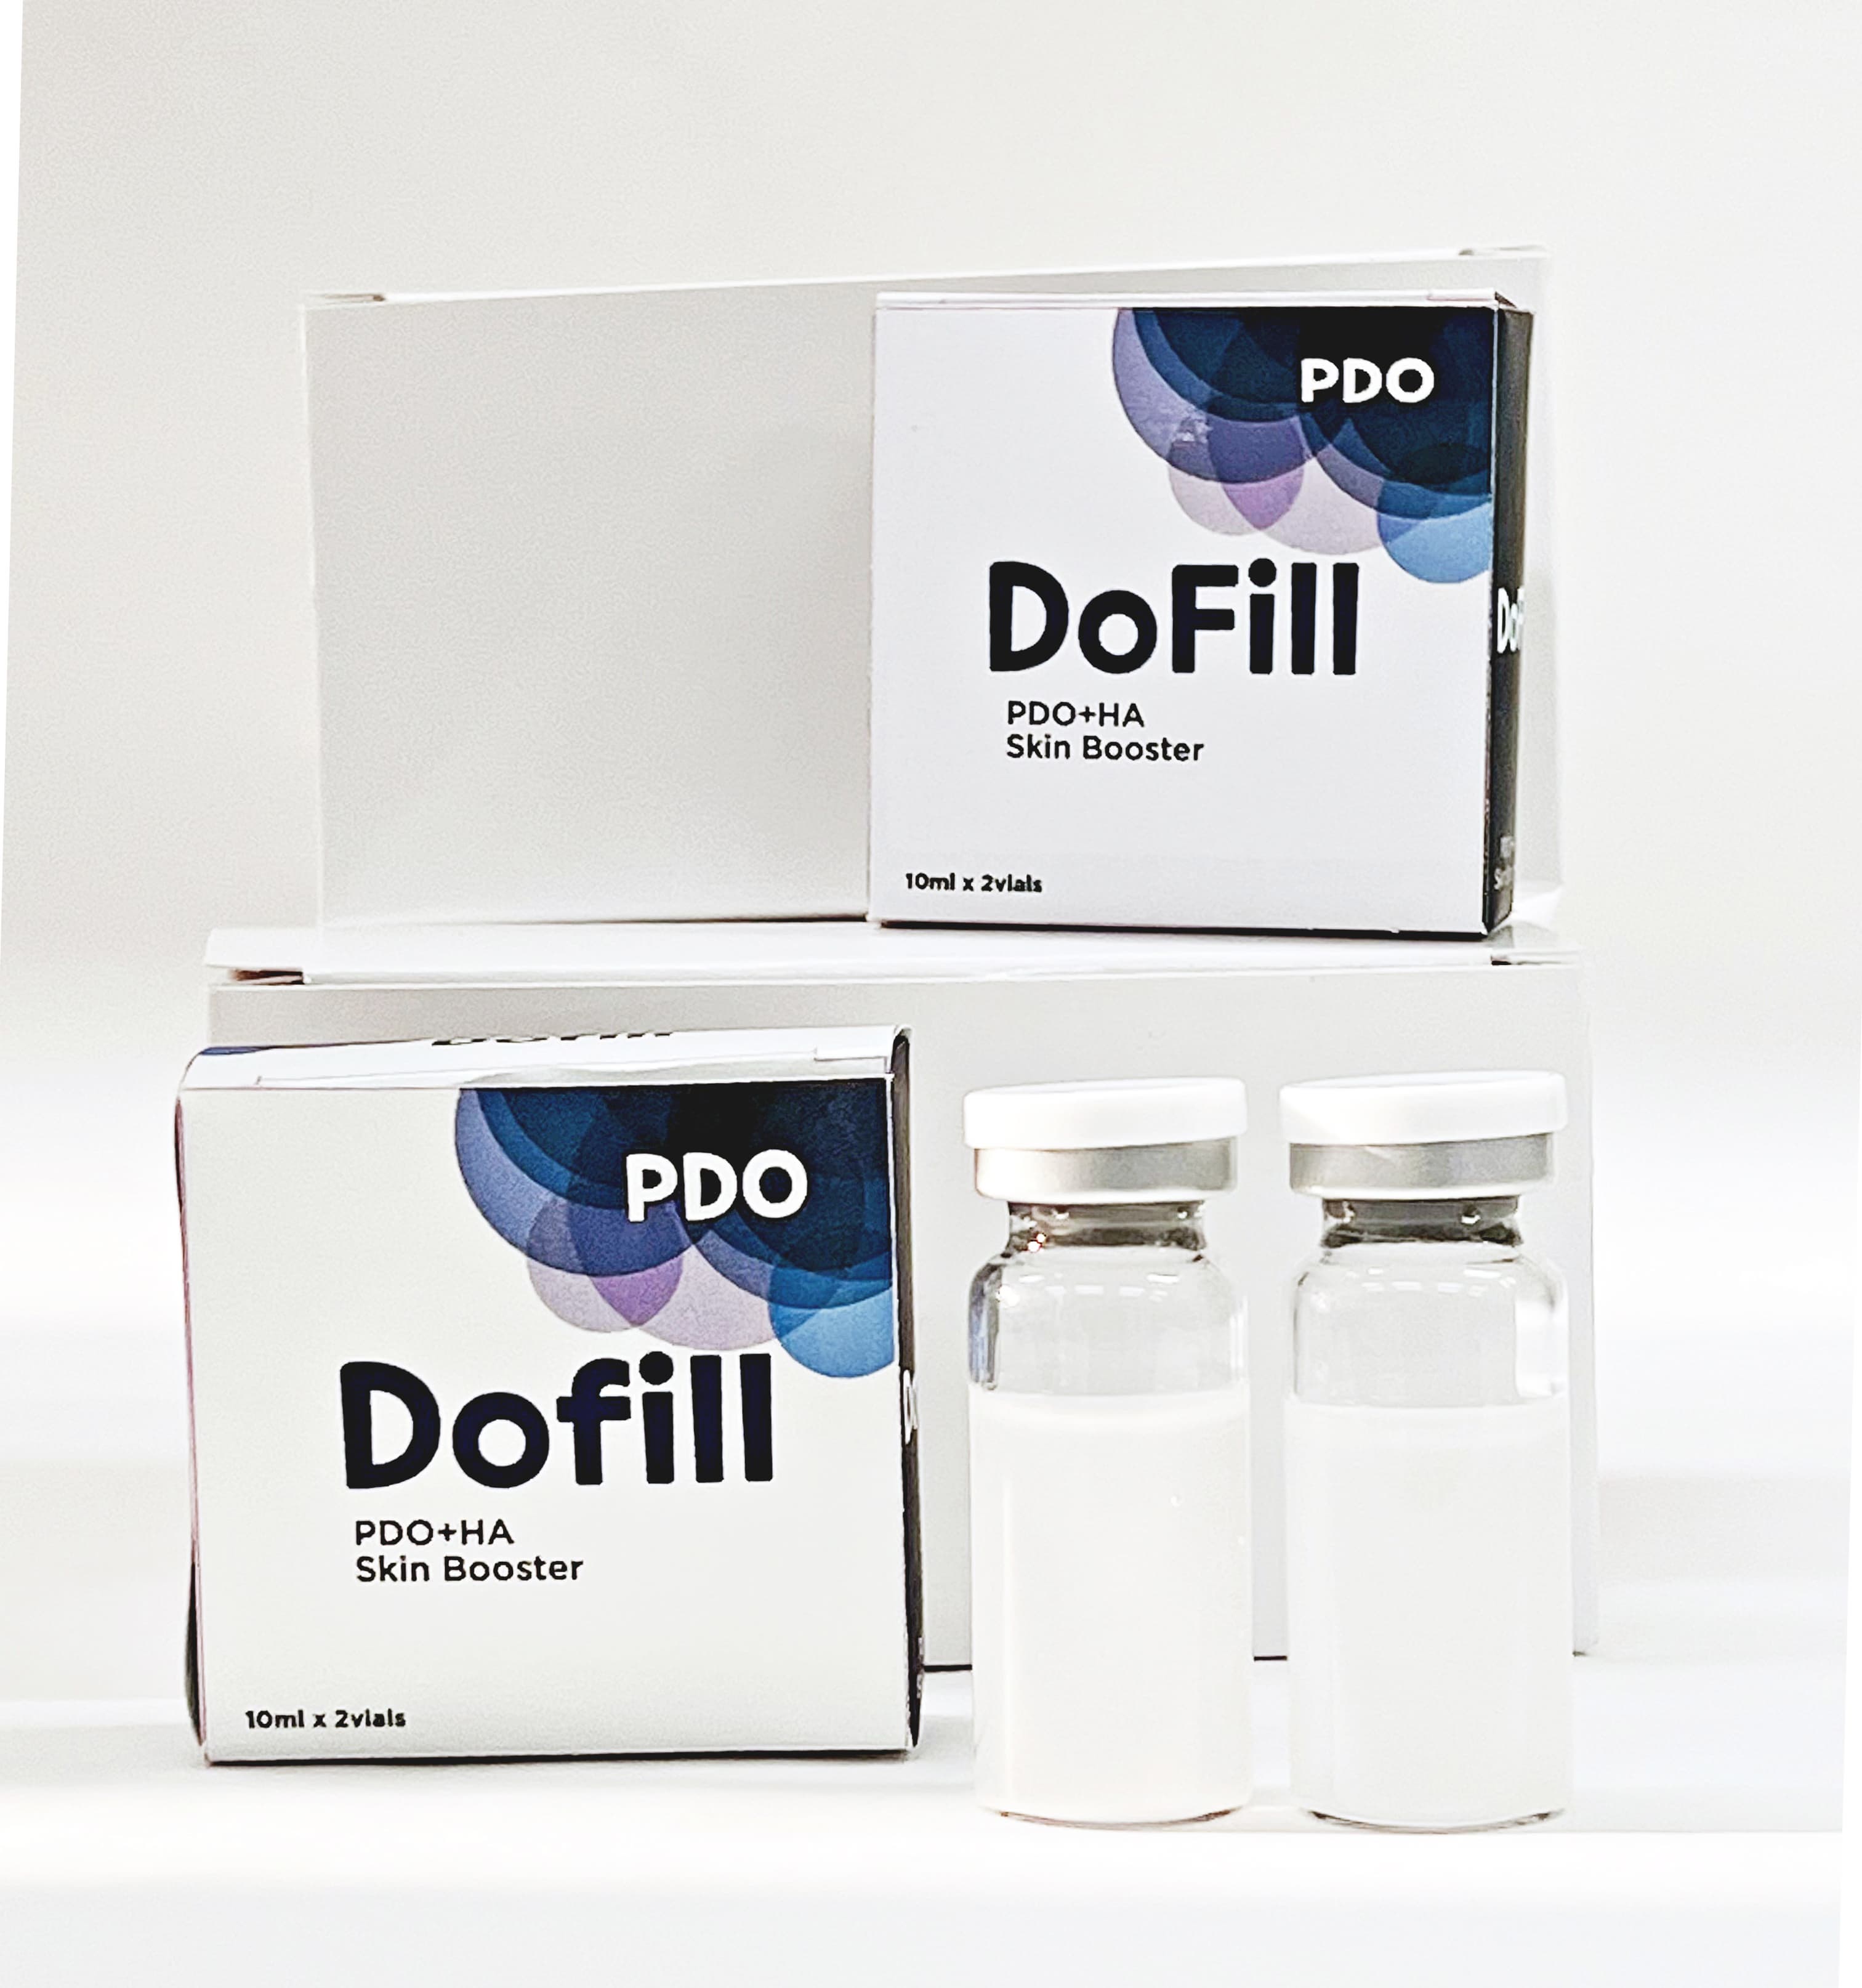 polymer_ PDO_ PLLA_ PCL_ skin booster_ Dermal filler_ skin care_ collagen_ biomaterial_ HA filler_